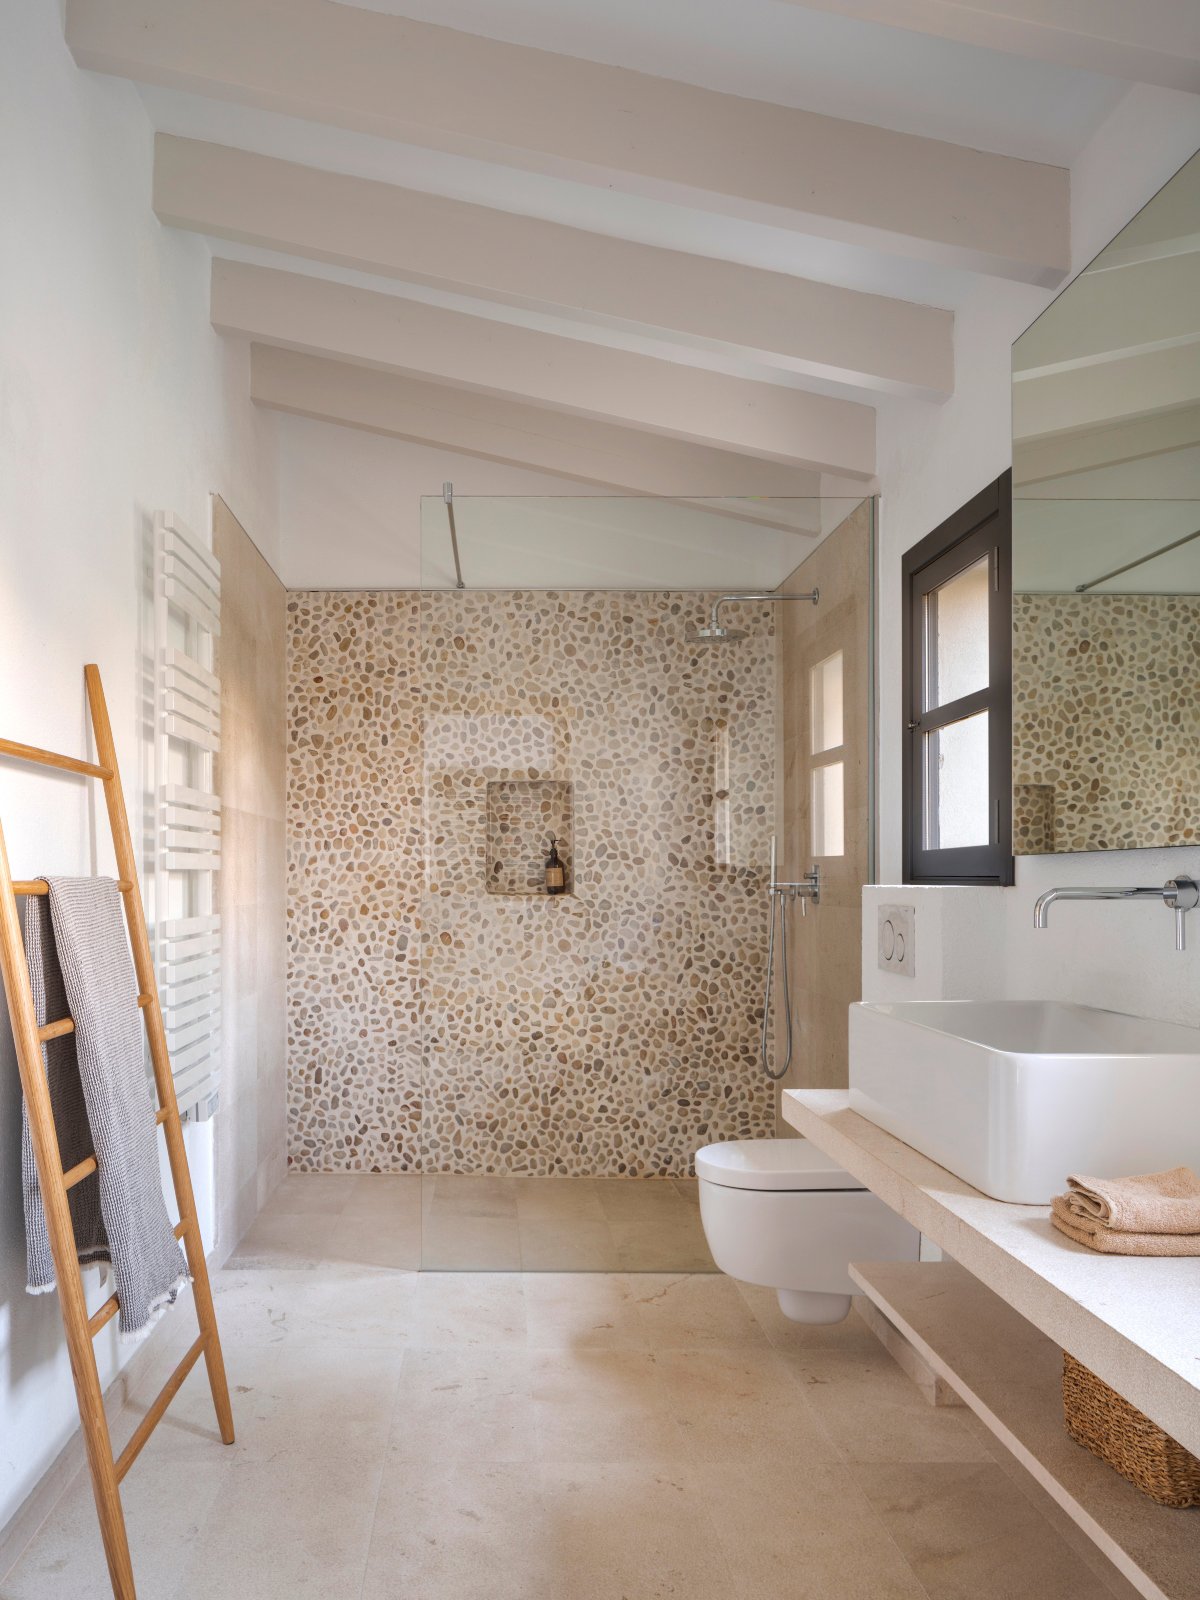 Baño en tonos beige con mosaico de piedras en la ducha